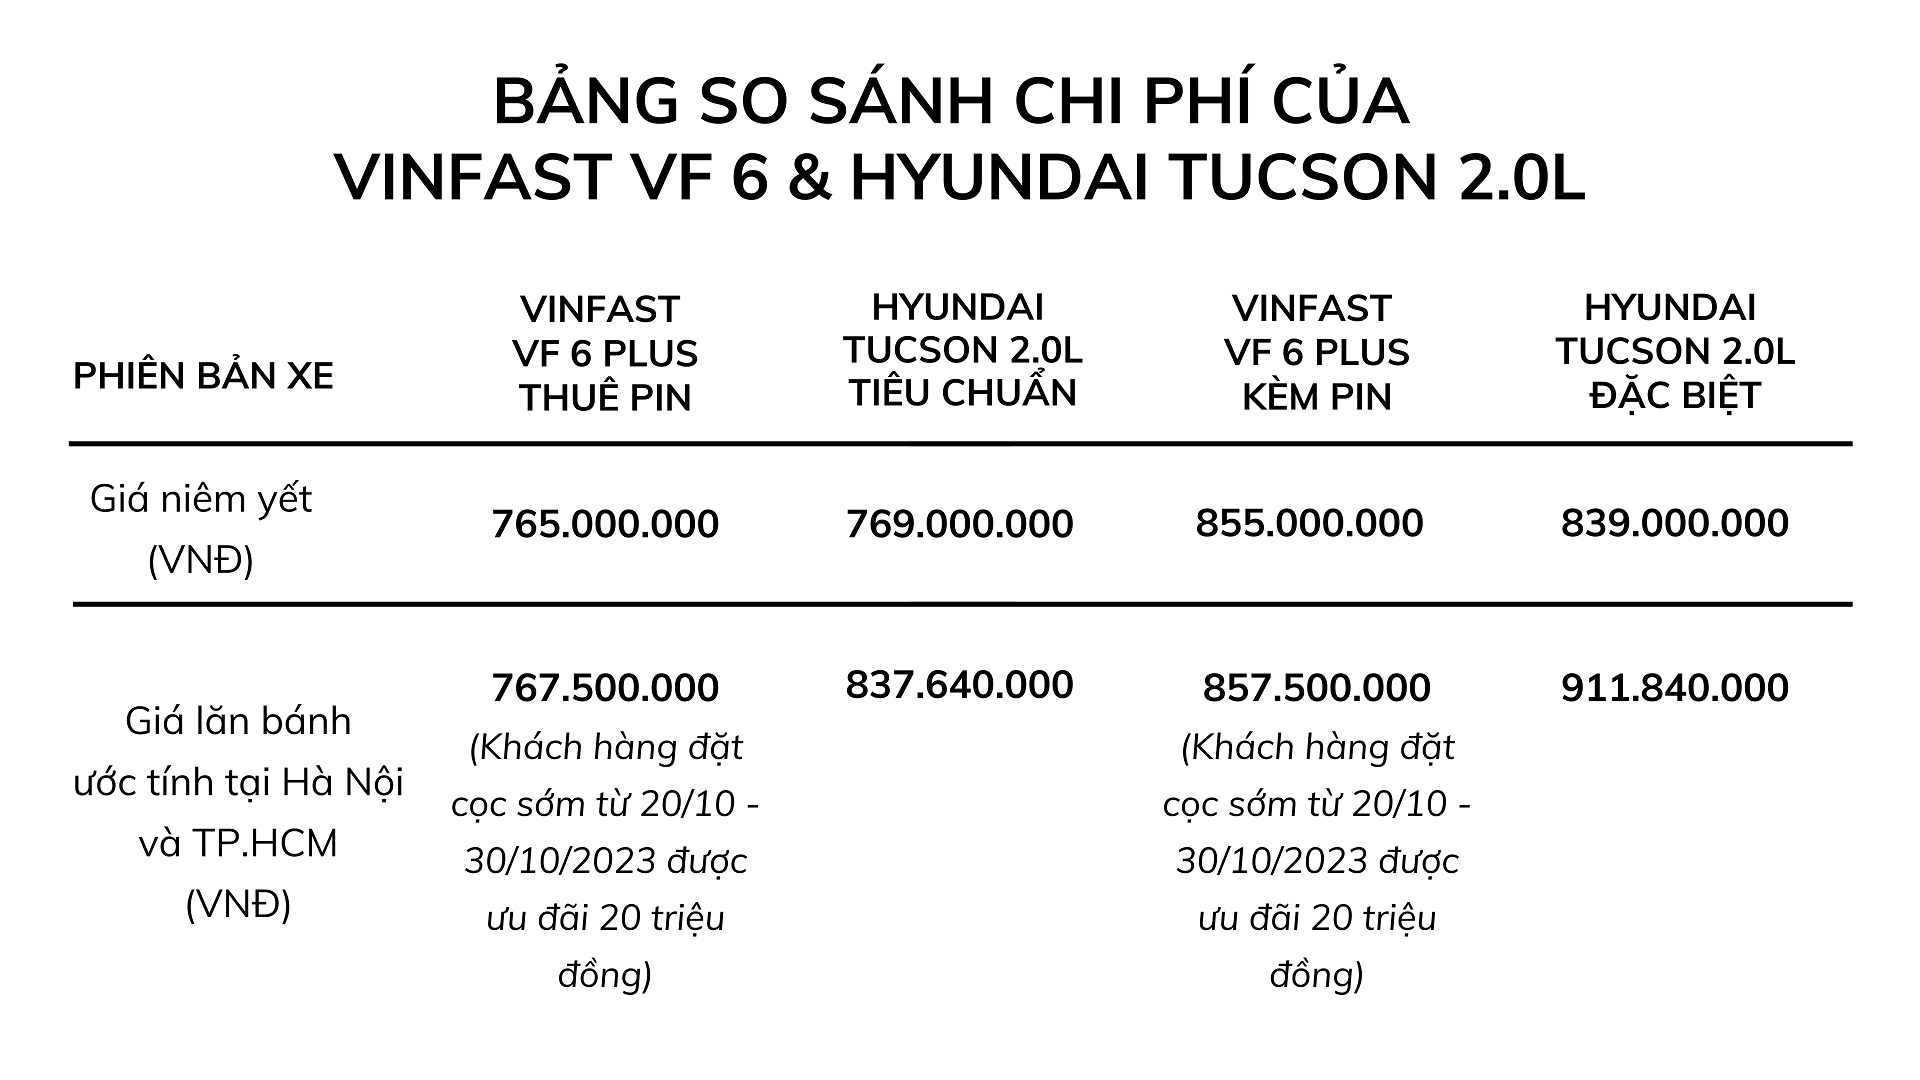 Hyundai Tucson giảm giá về ngang VinFast VF 6